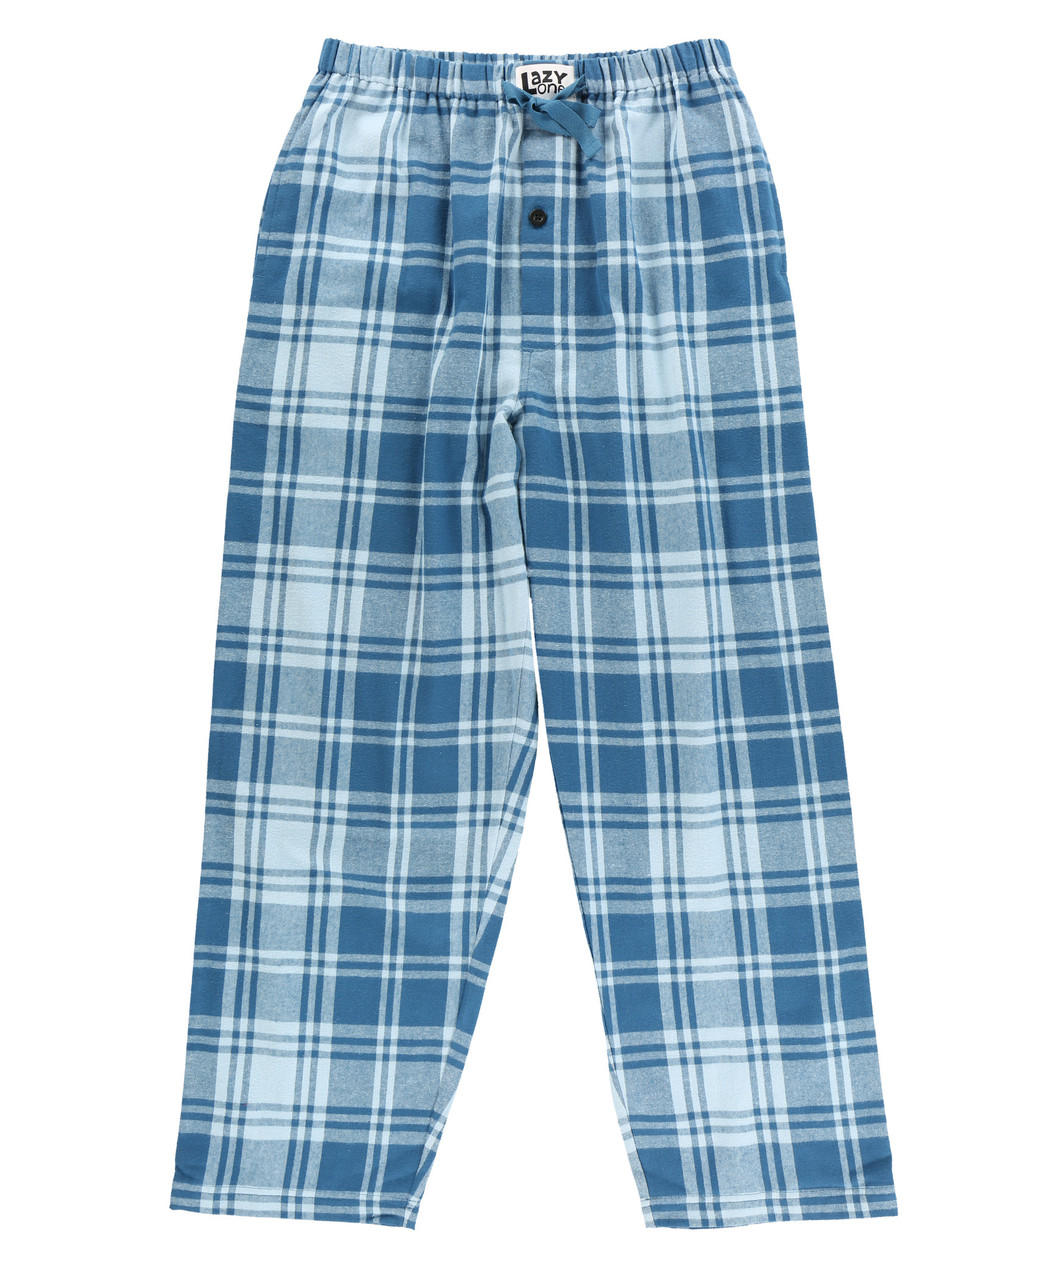 Winter Plaid Men's Flannel PJ Pants